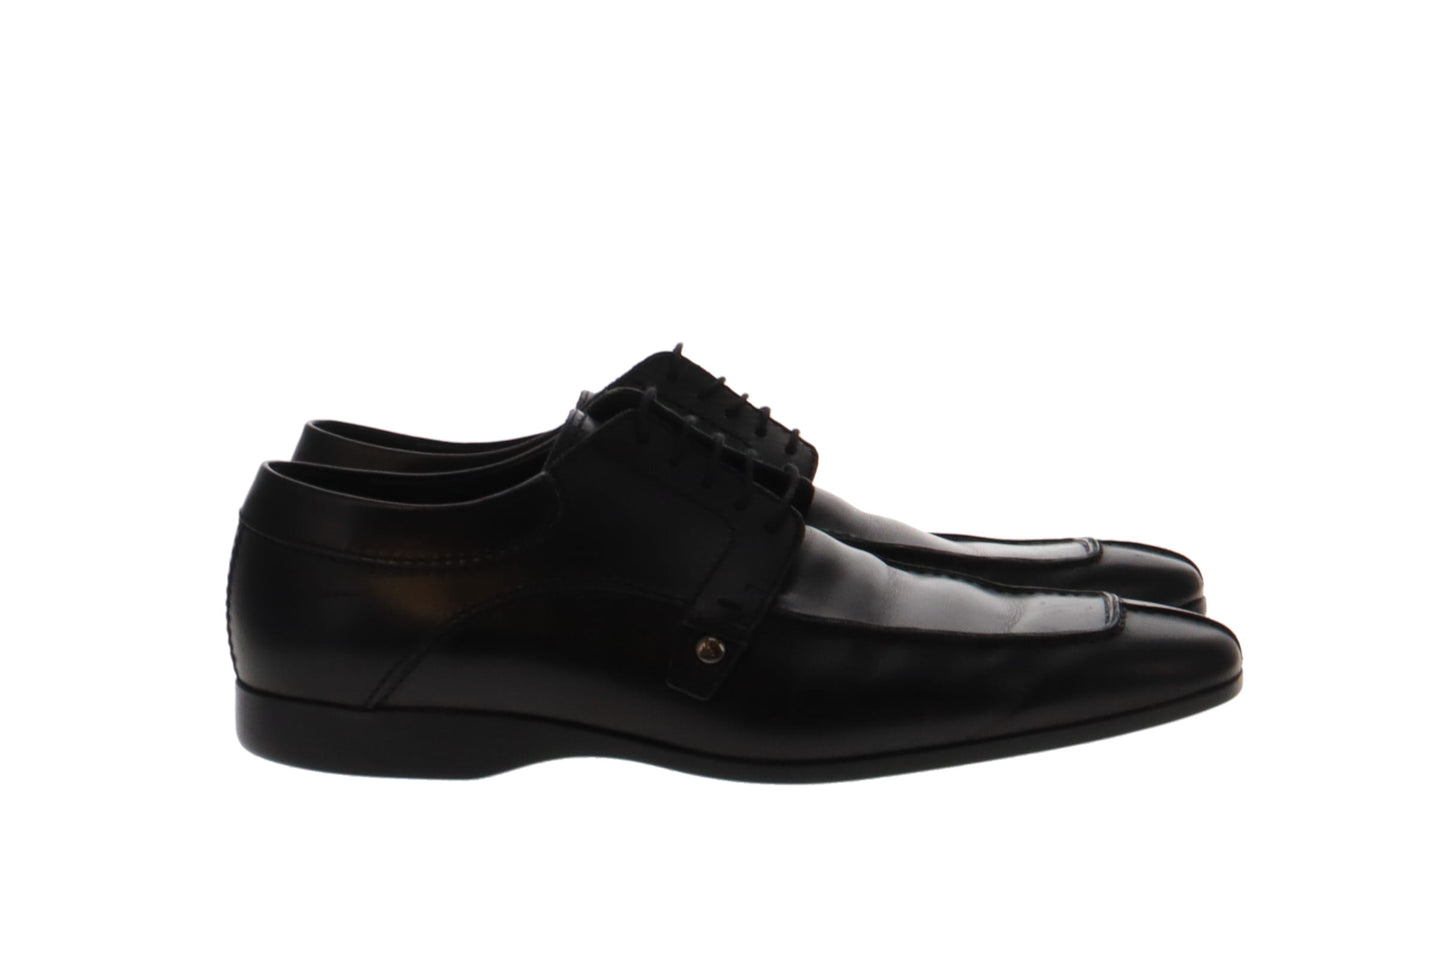 Louis Vuitton Men’s Black Leather Formal Shoes UK 8